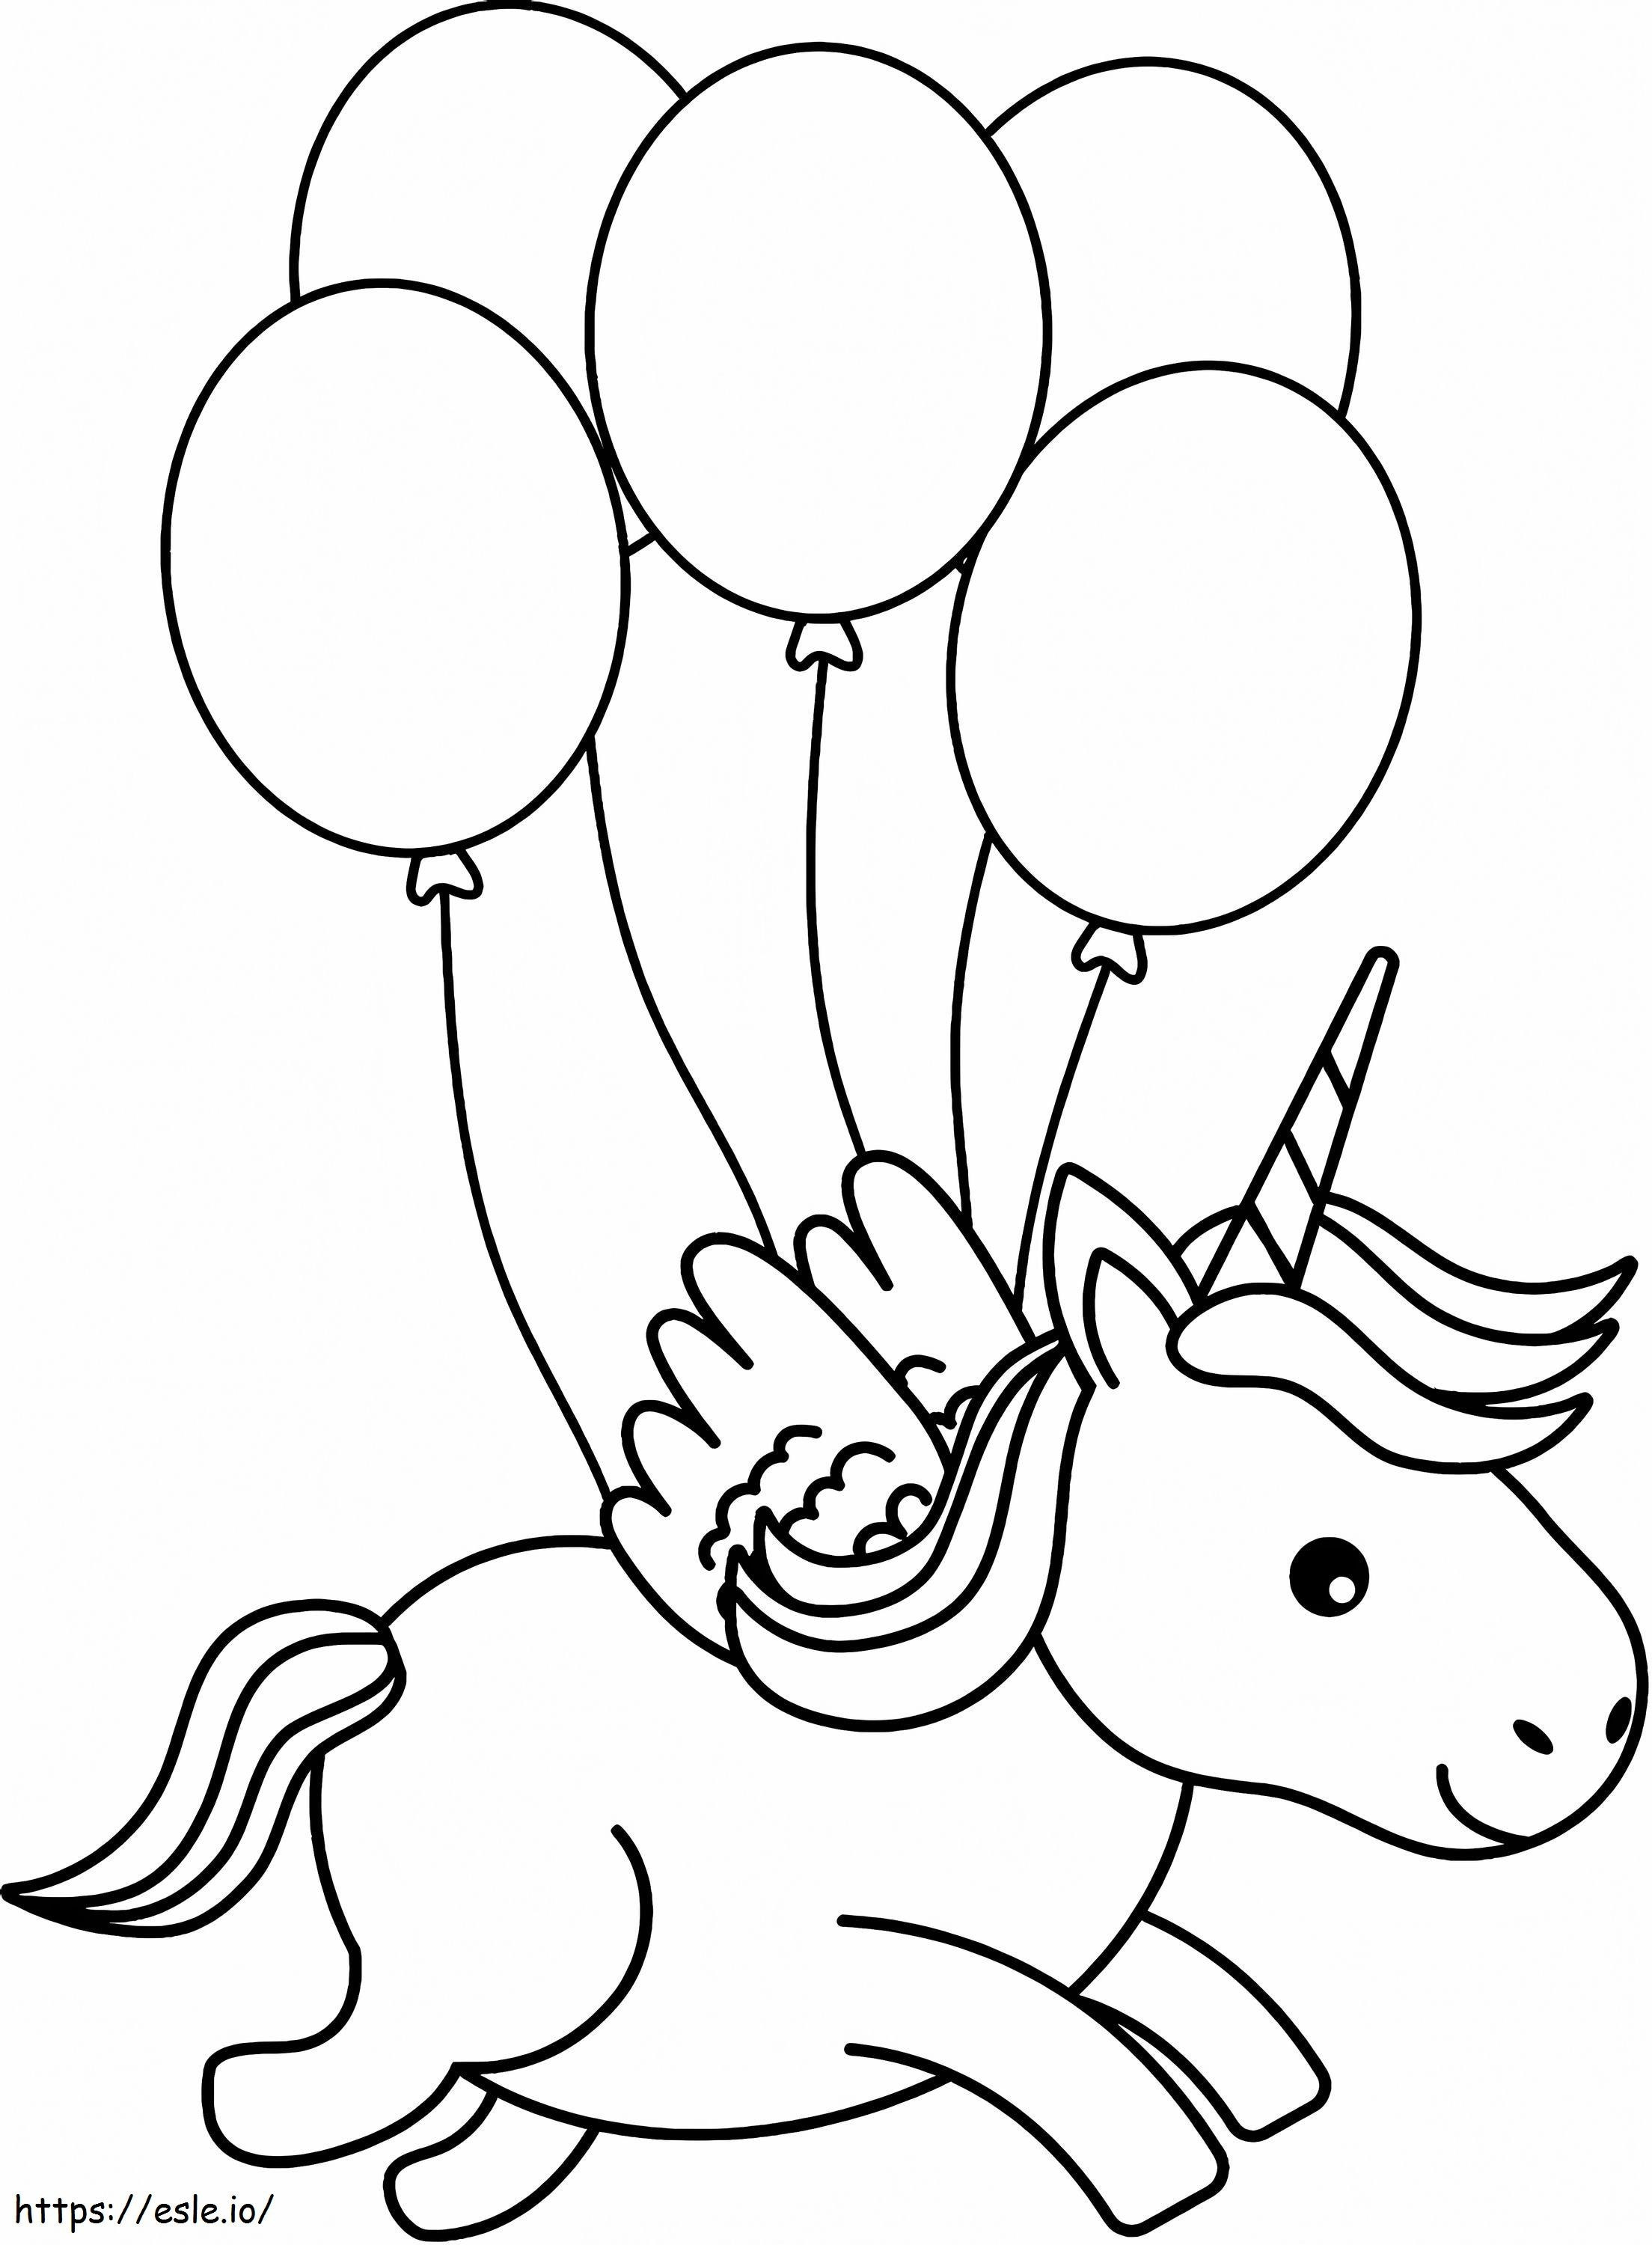 1563411384 Kleine eenhoorn met ballonnen, A4 kleurplaat kleurplaat